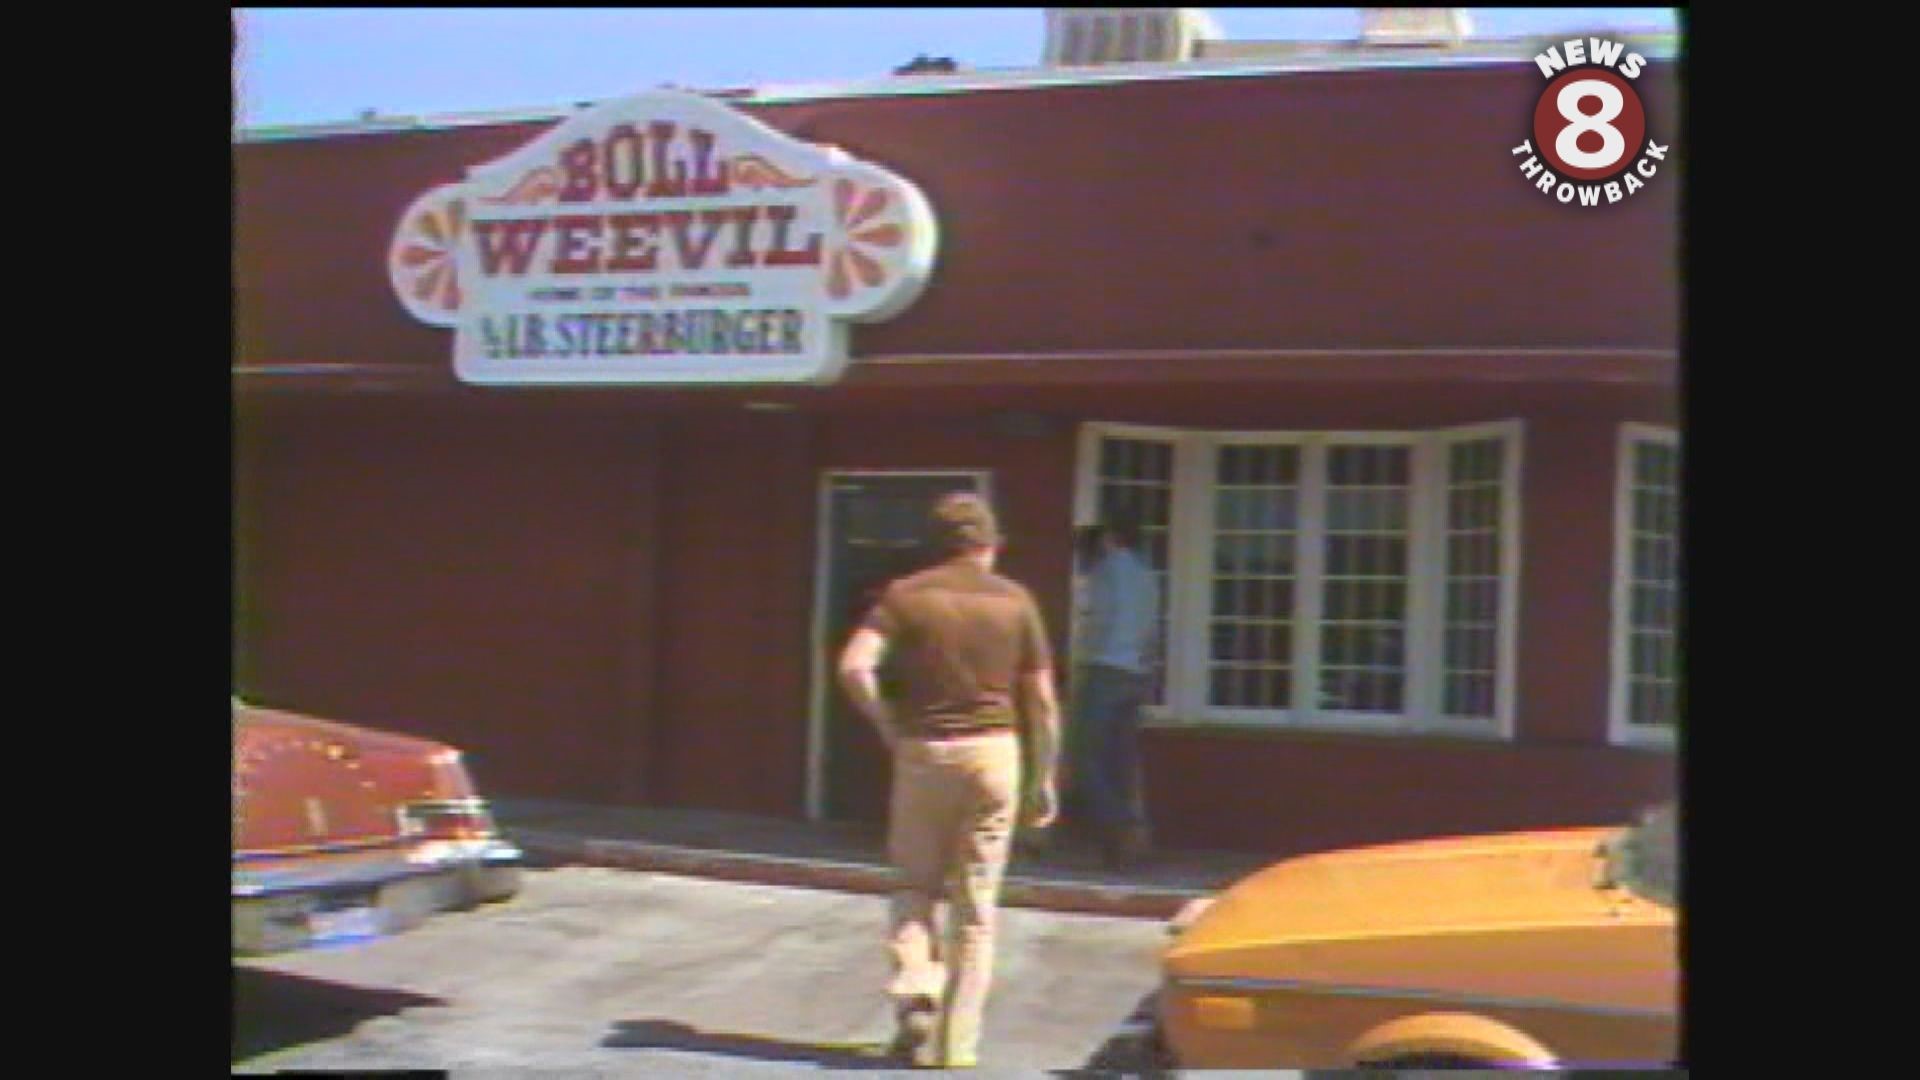 Boll Weevil Home of the Steerburger